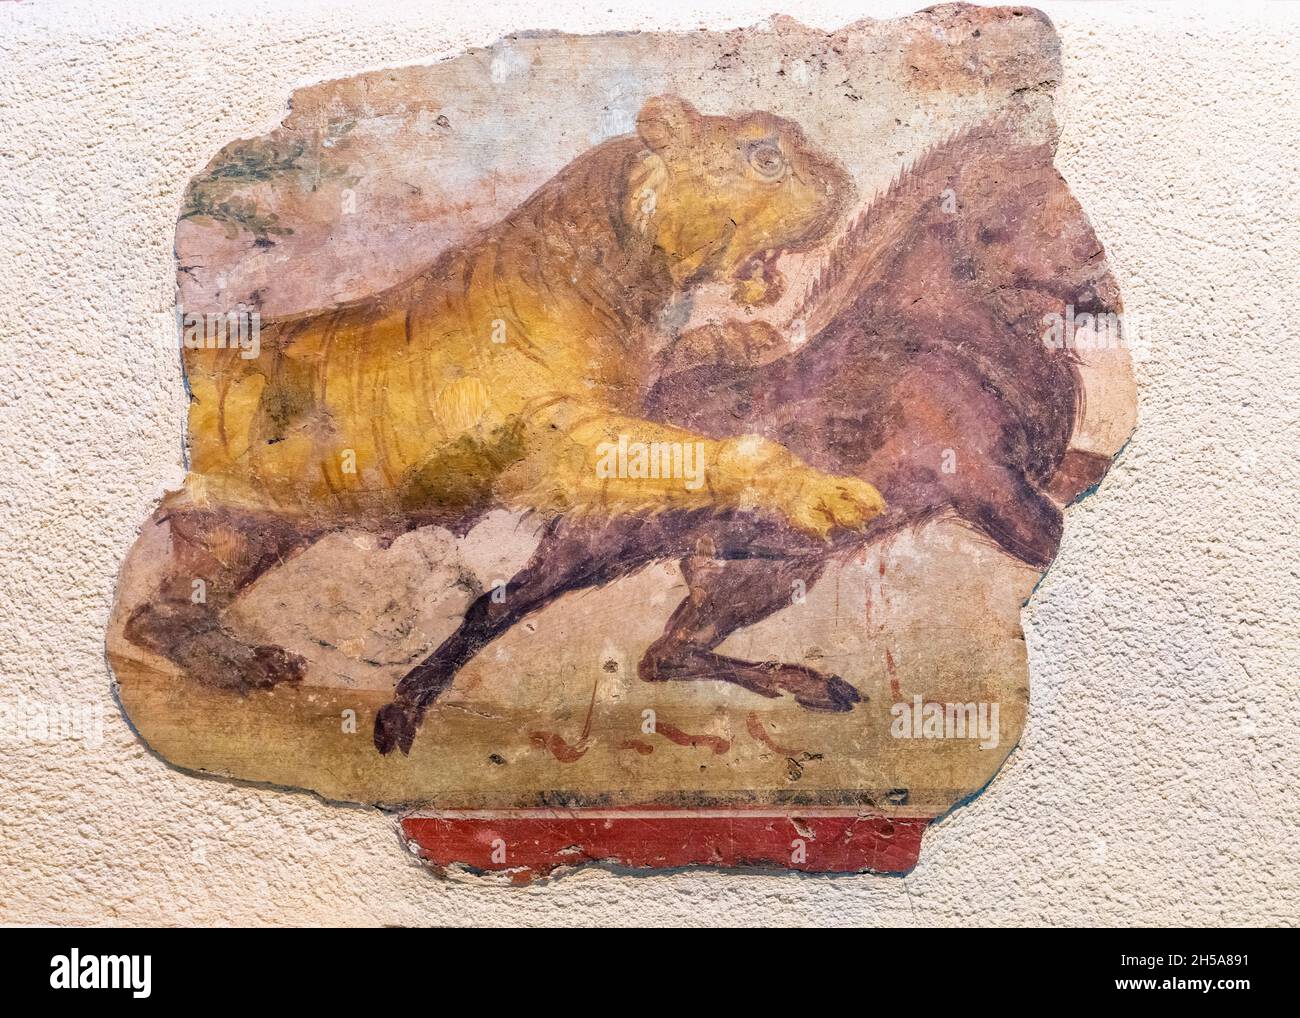 Détail d'une fresque romaine d'un lion attaquant un cheval.Museo Nacional de Arte Romano (Musée national d'art romain), Merida, province de Badajoz, Extremad Banque D'Images